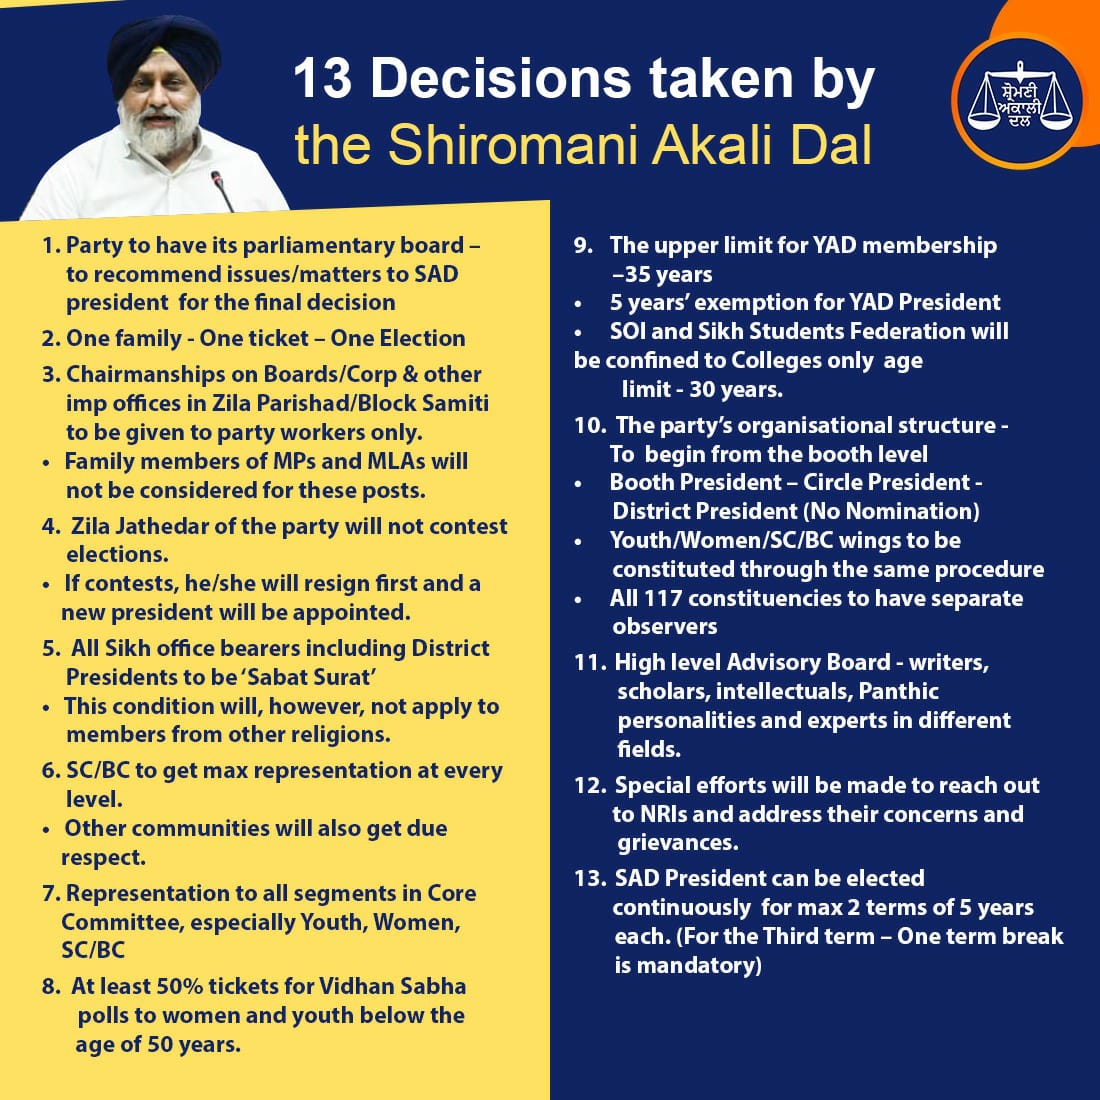 13 Decisions taken by Shiromani Akali Dal